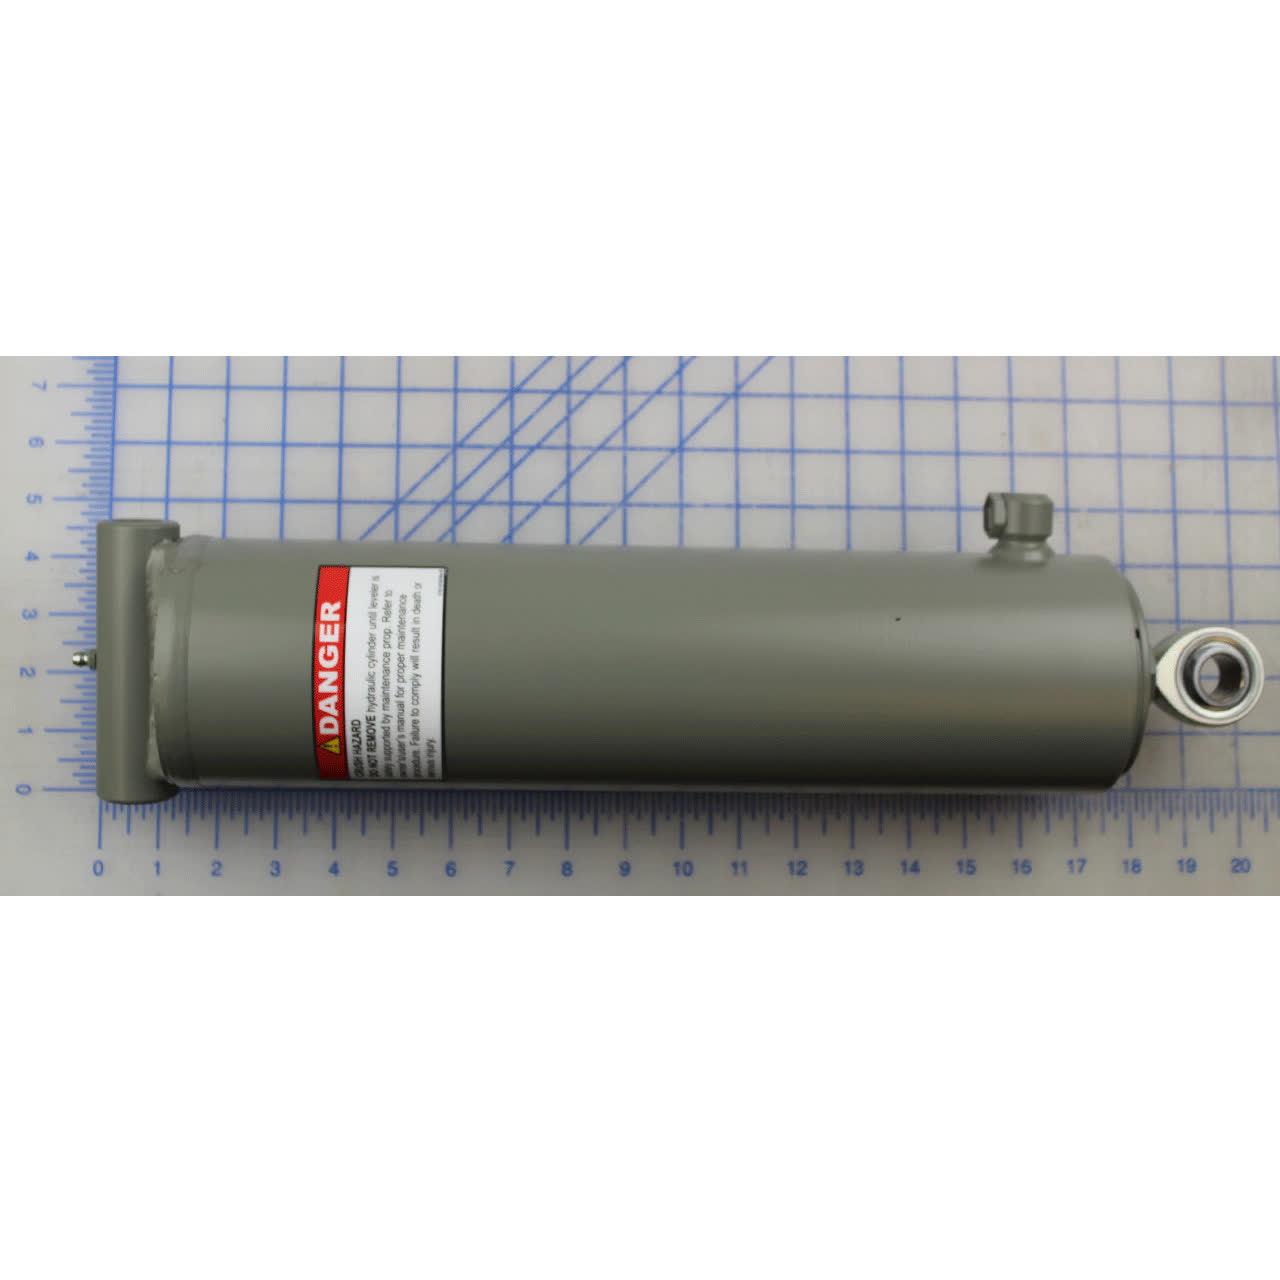 0525-0127 Hoist Cylinder 5' Or 6' Lg Platforms - McGuire